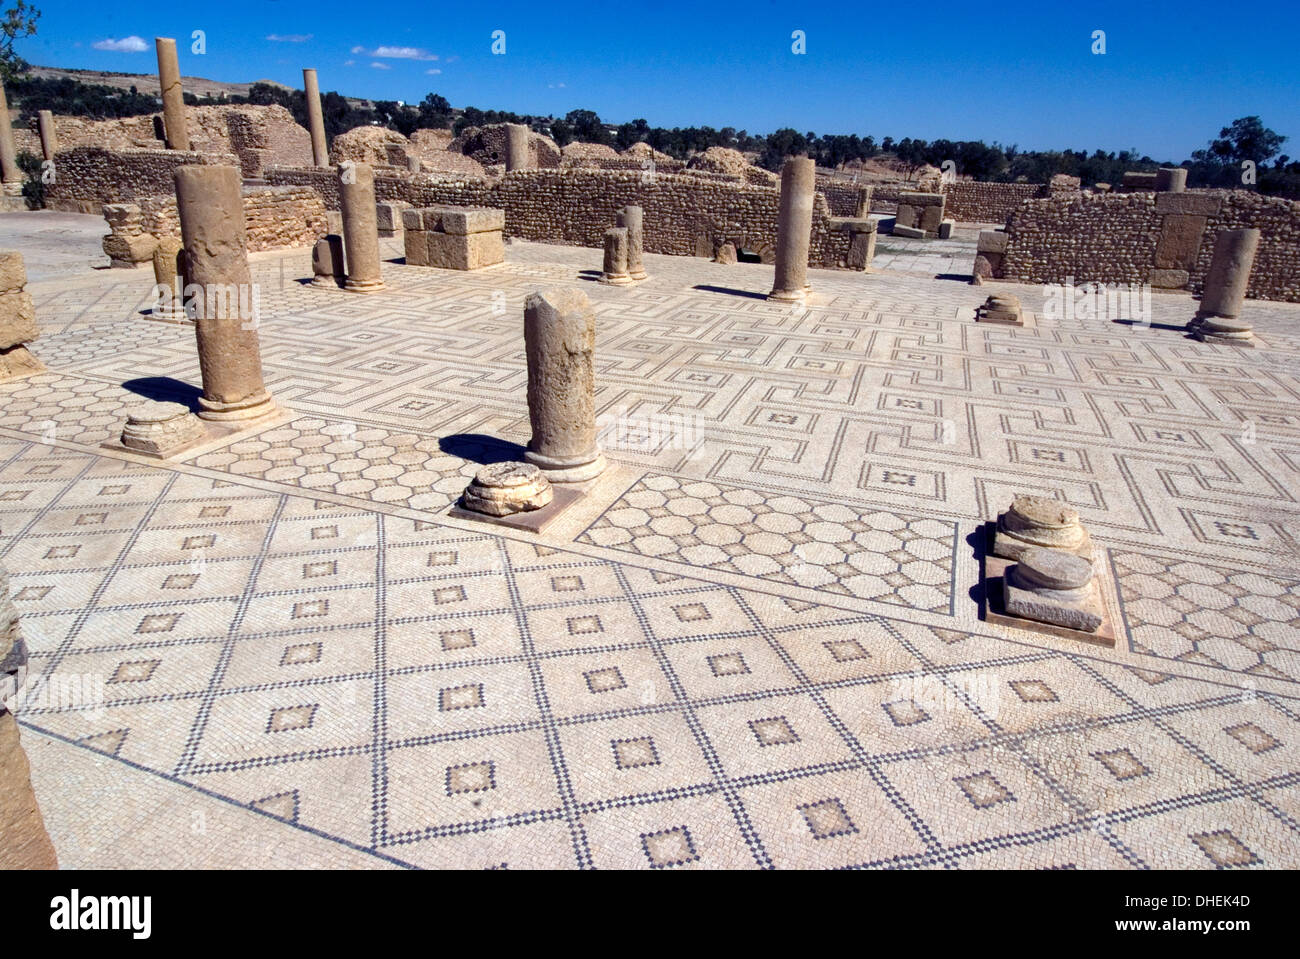 Large Baths, Roman ruin of Sbeitla, Tunisia, North Africa, Africa Stock Photo